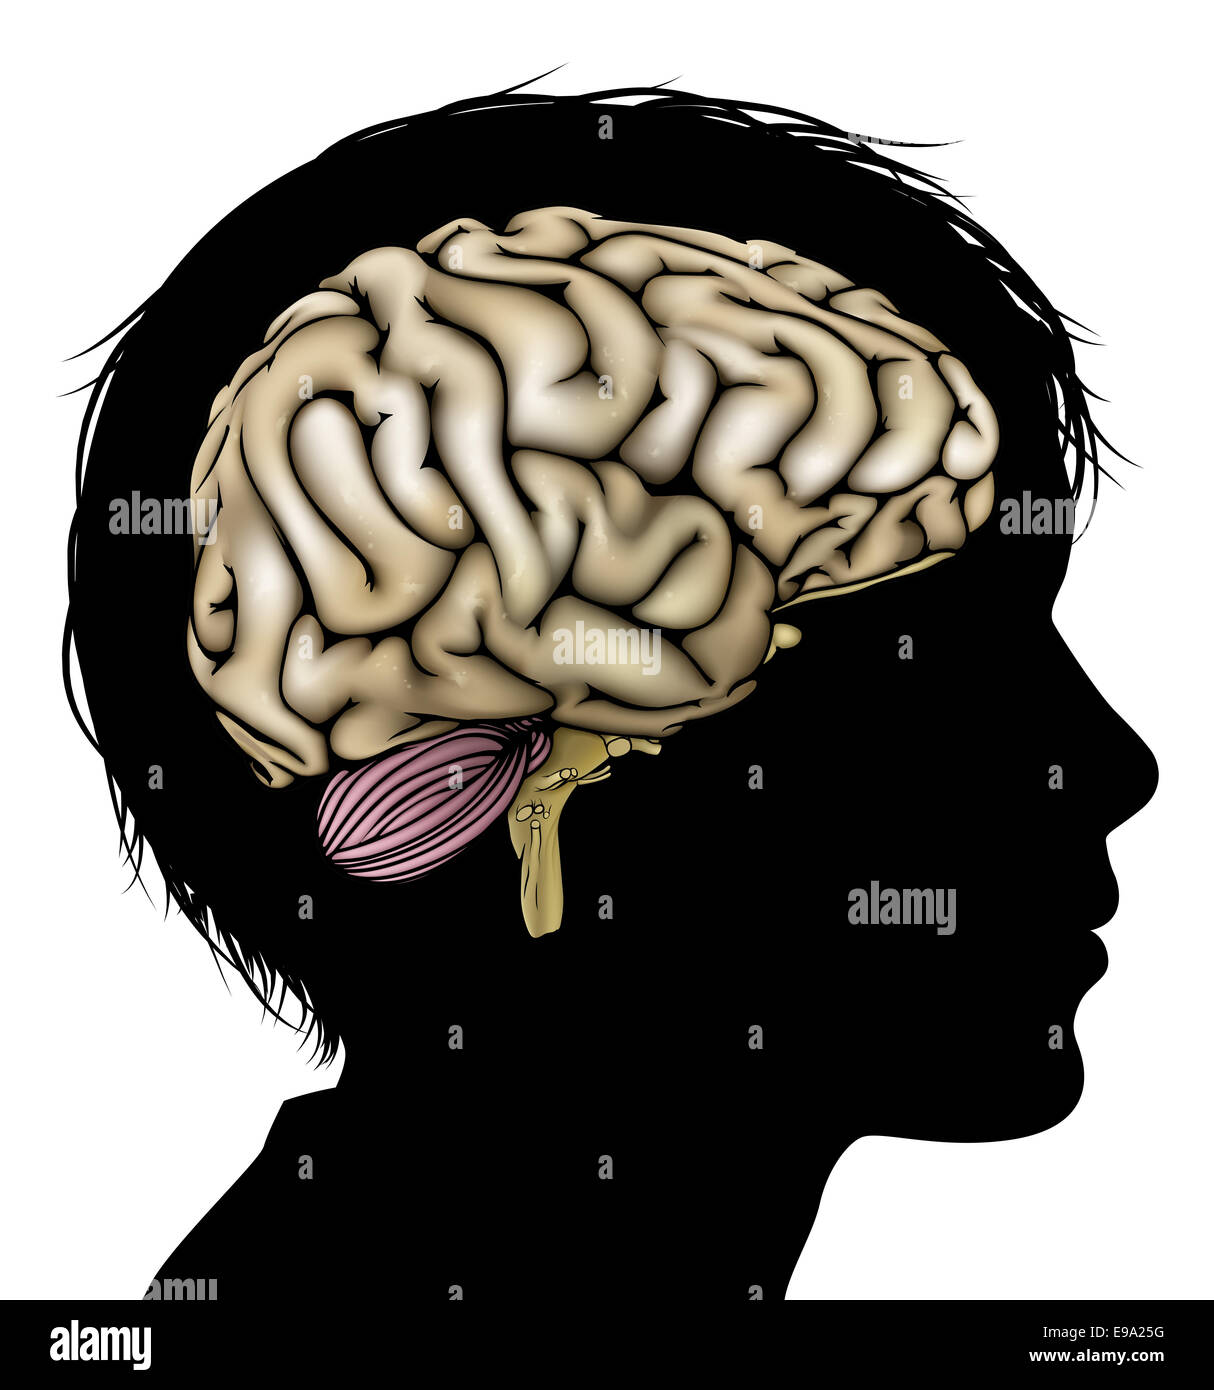 Une tête d'enfant en silhouette avec cerveau. Concept pour le développement mental, psychologique de l'enfant, le développement du cerveau, l'apprentissage et de l'edu Banque D'Images